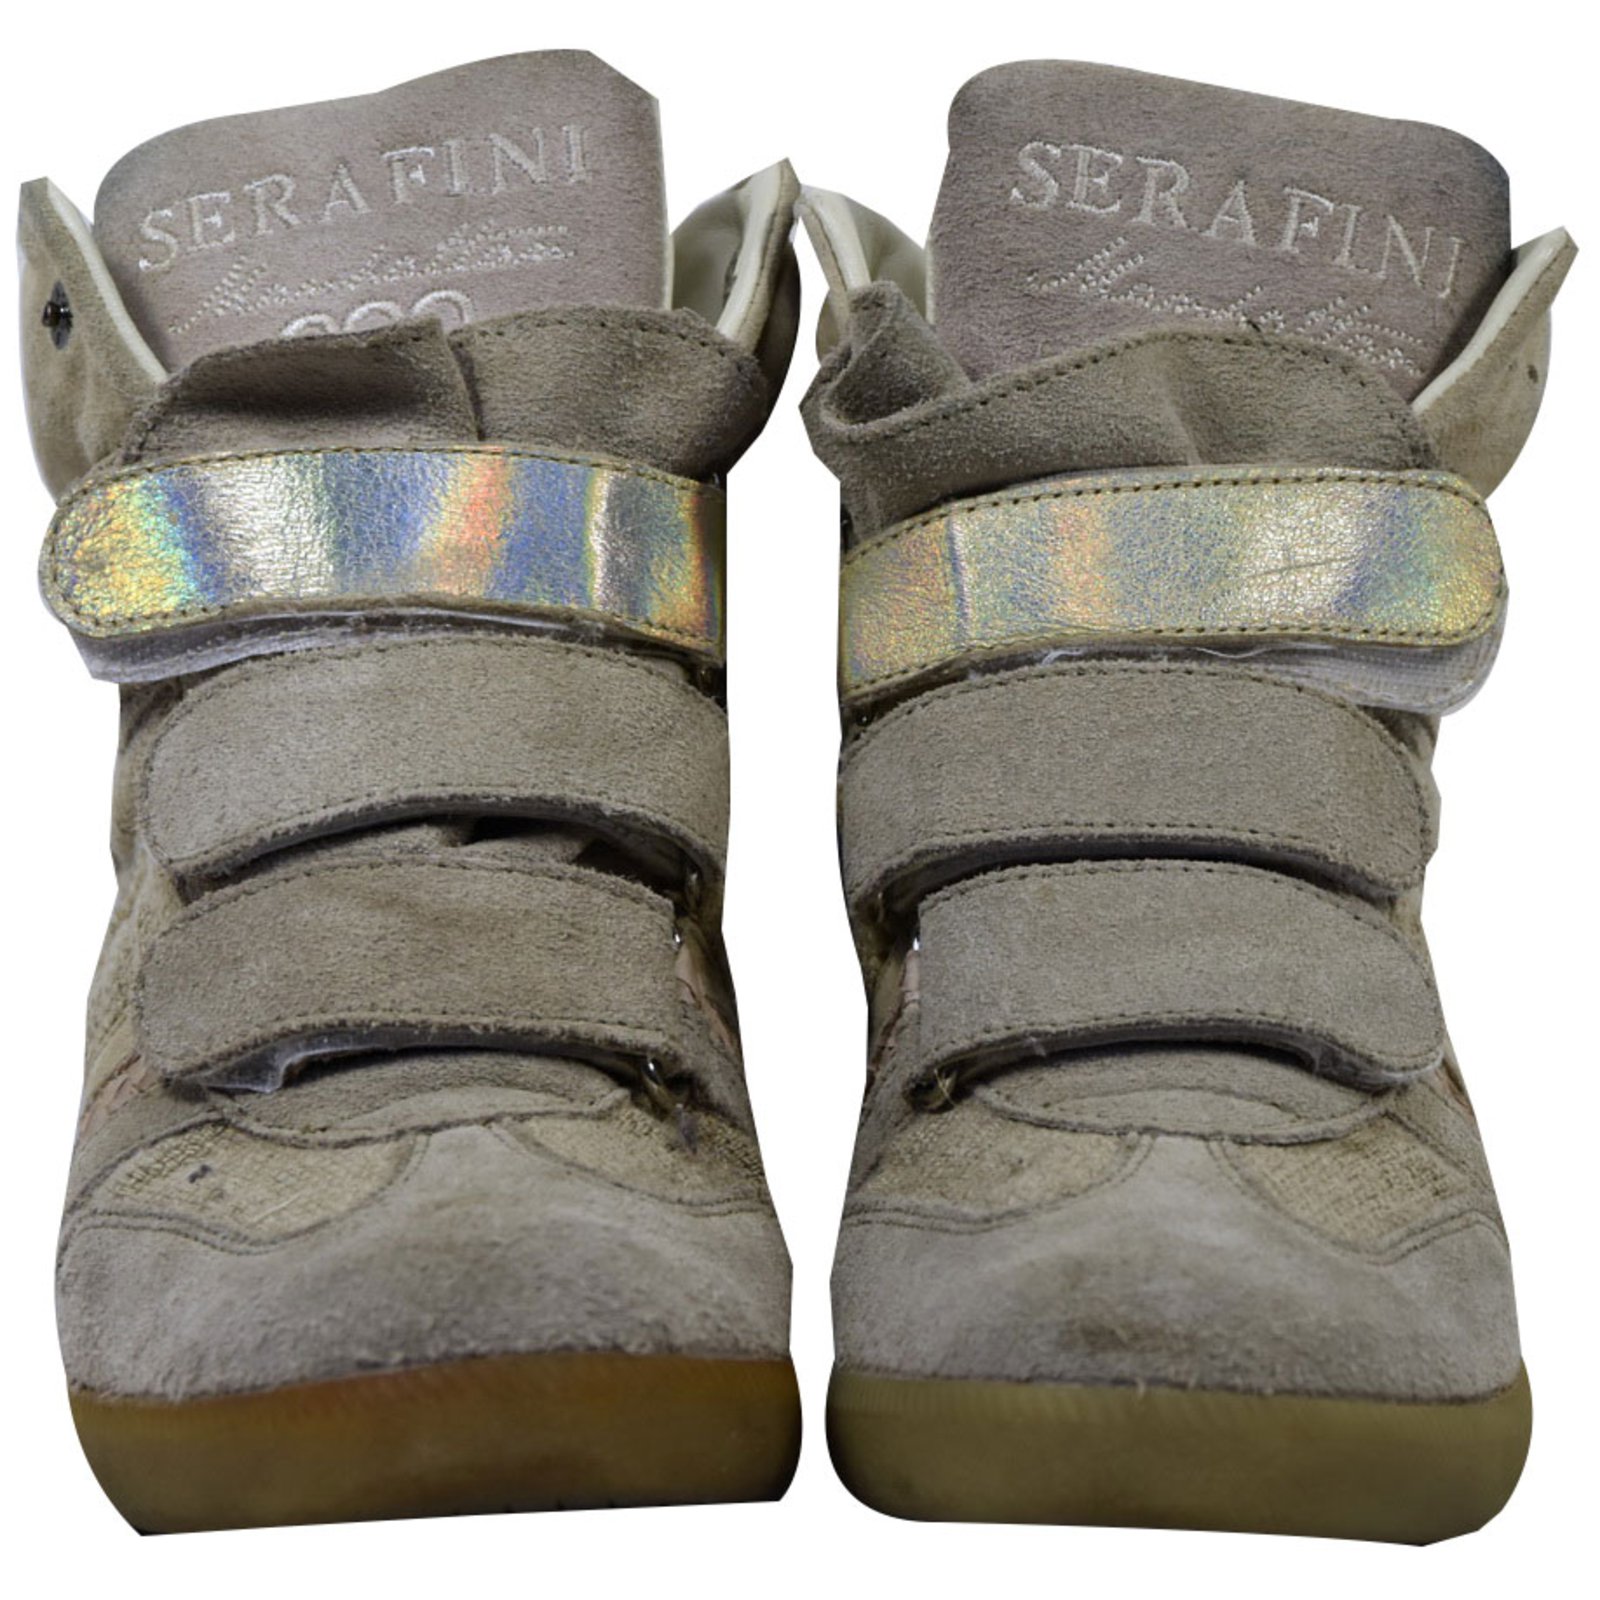 serafini sneakers